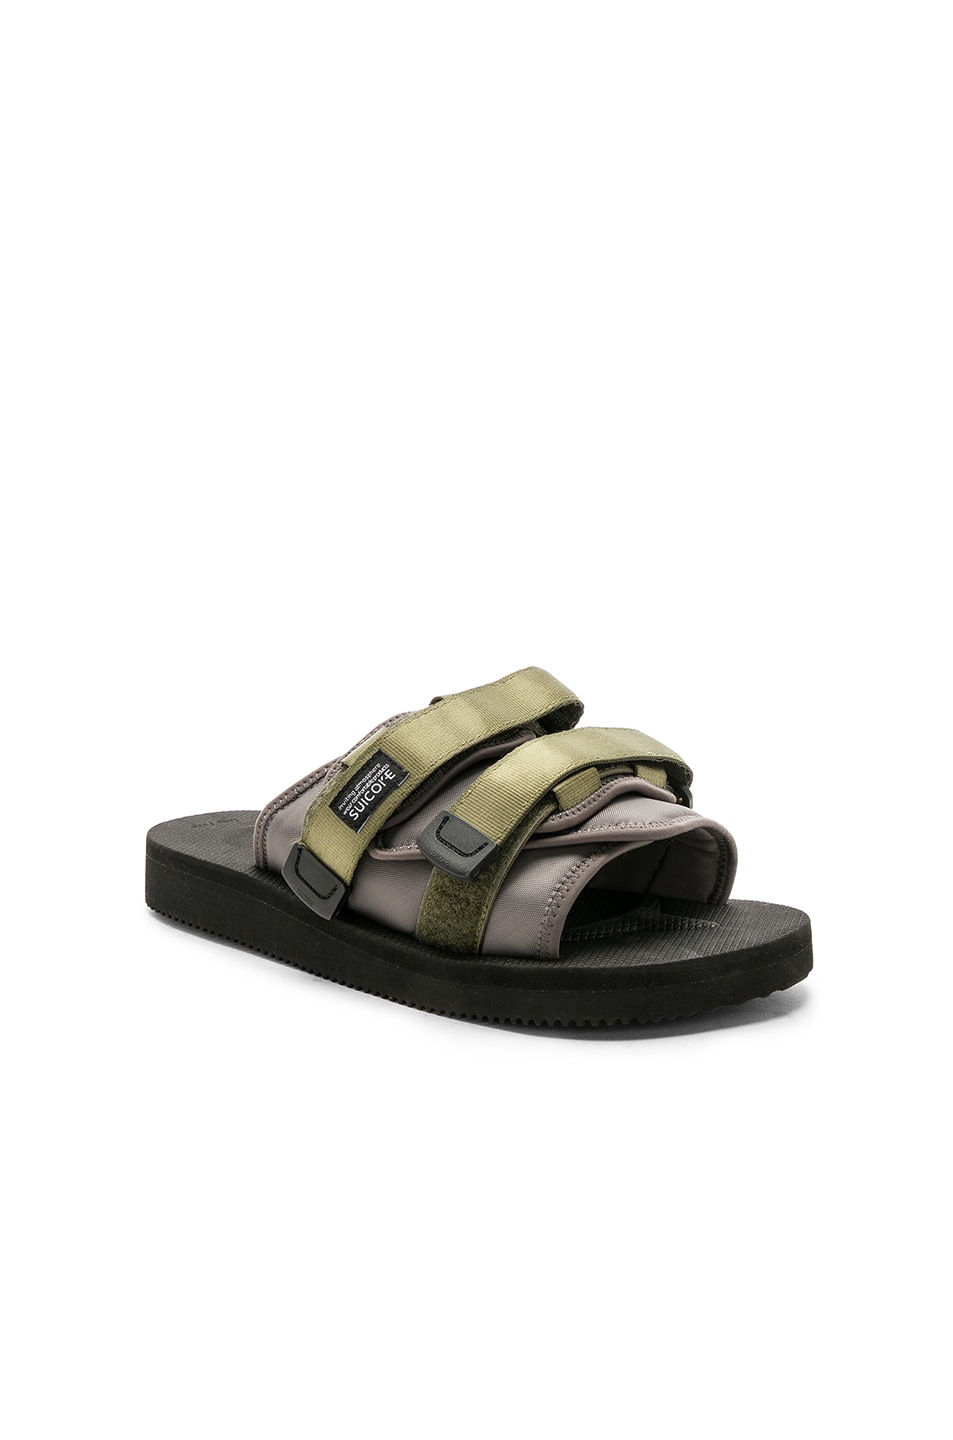 Image 1 of JOHN ELLIOTT x Suicoke Sandals in Black & Charcoal